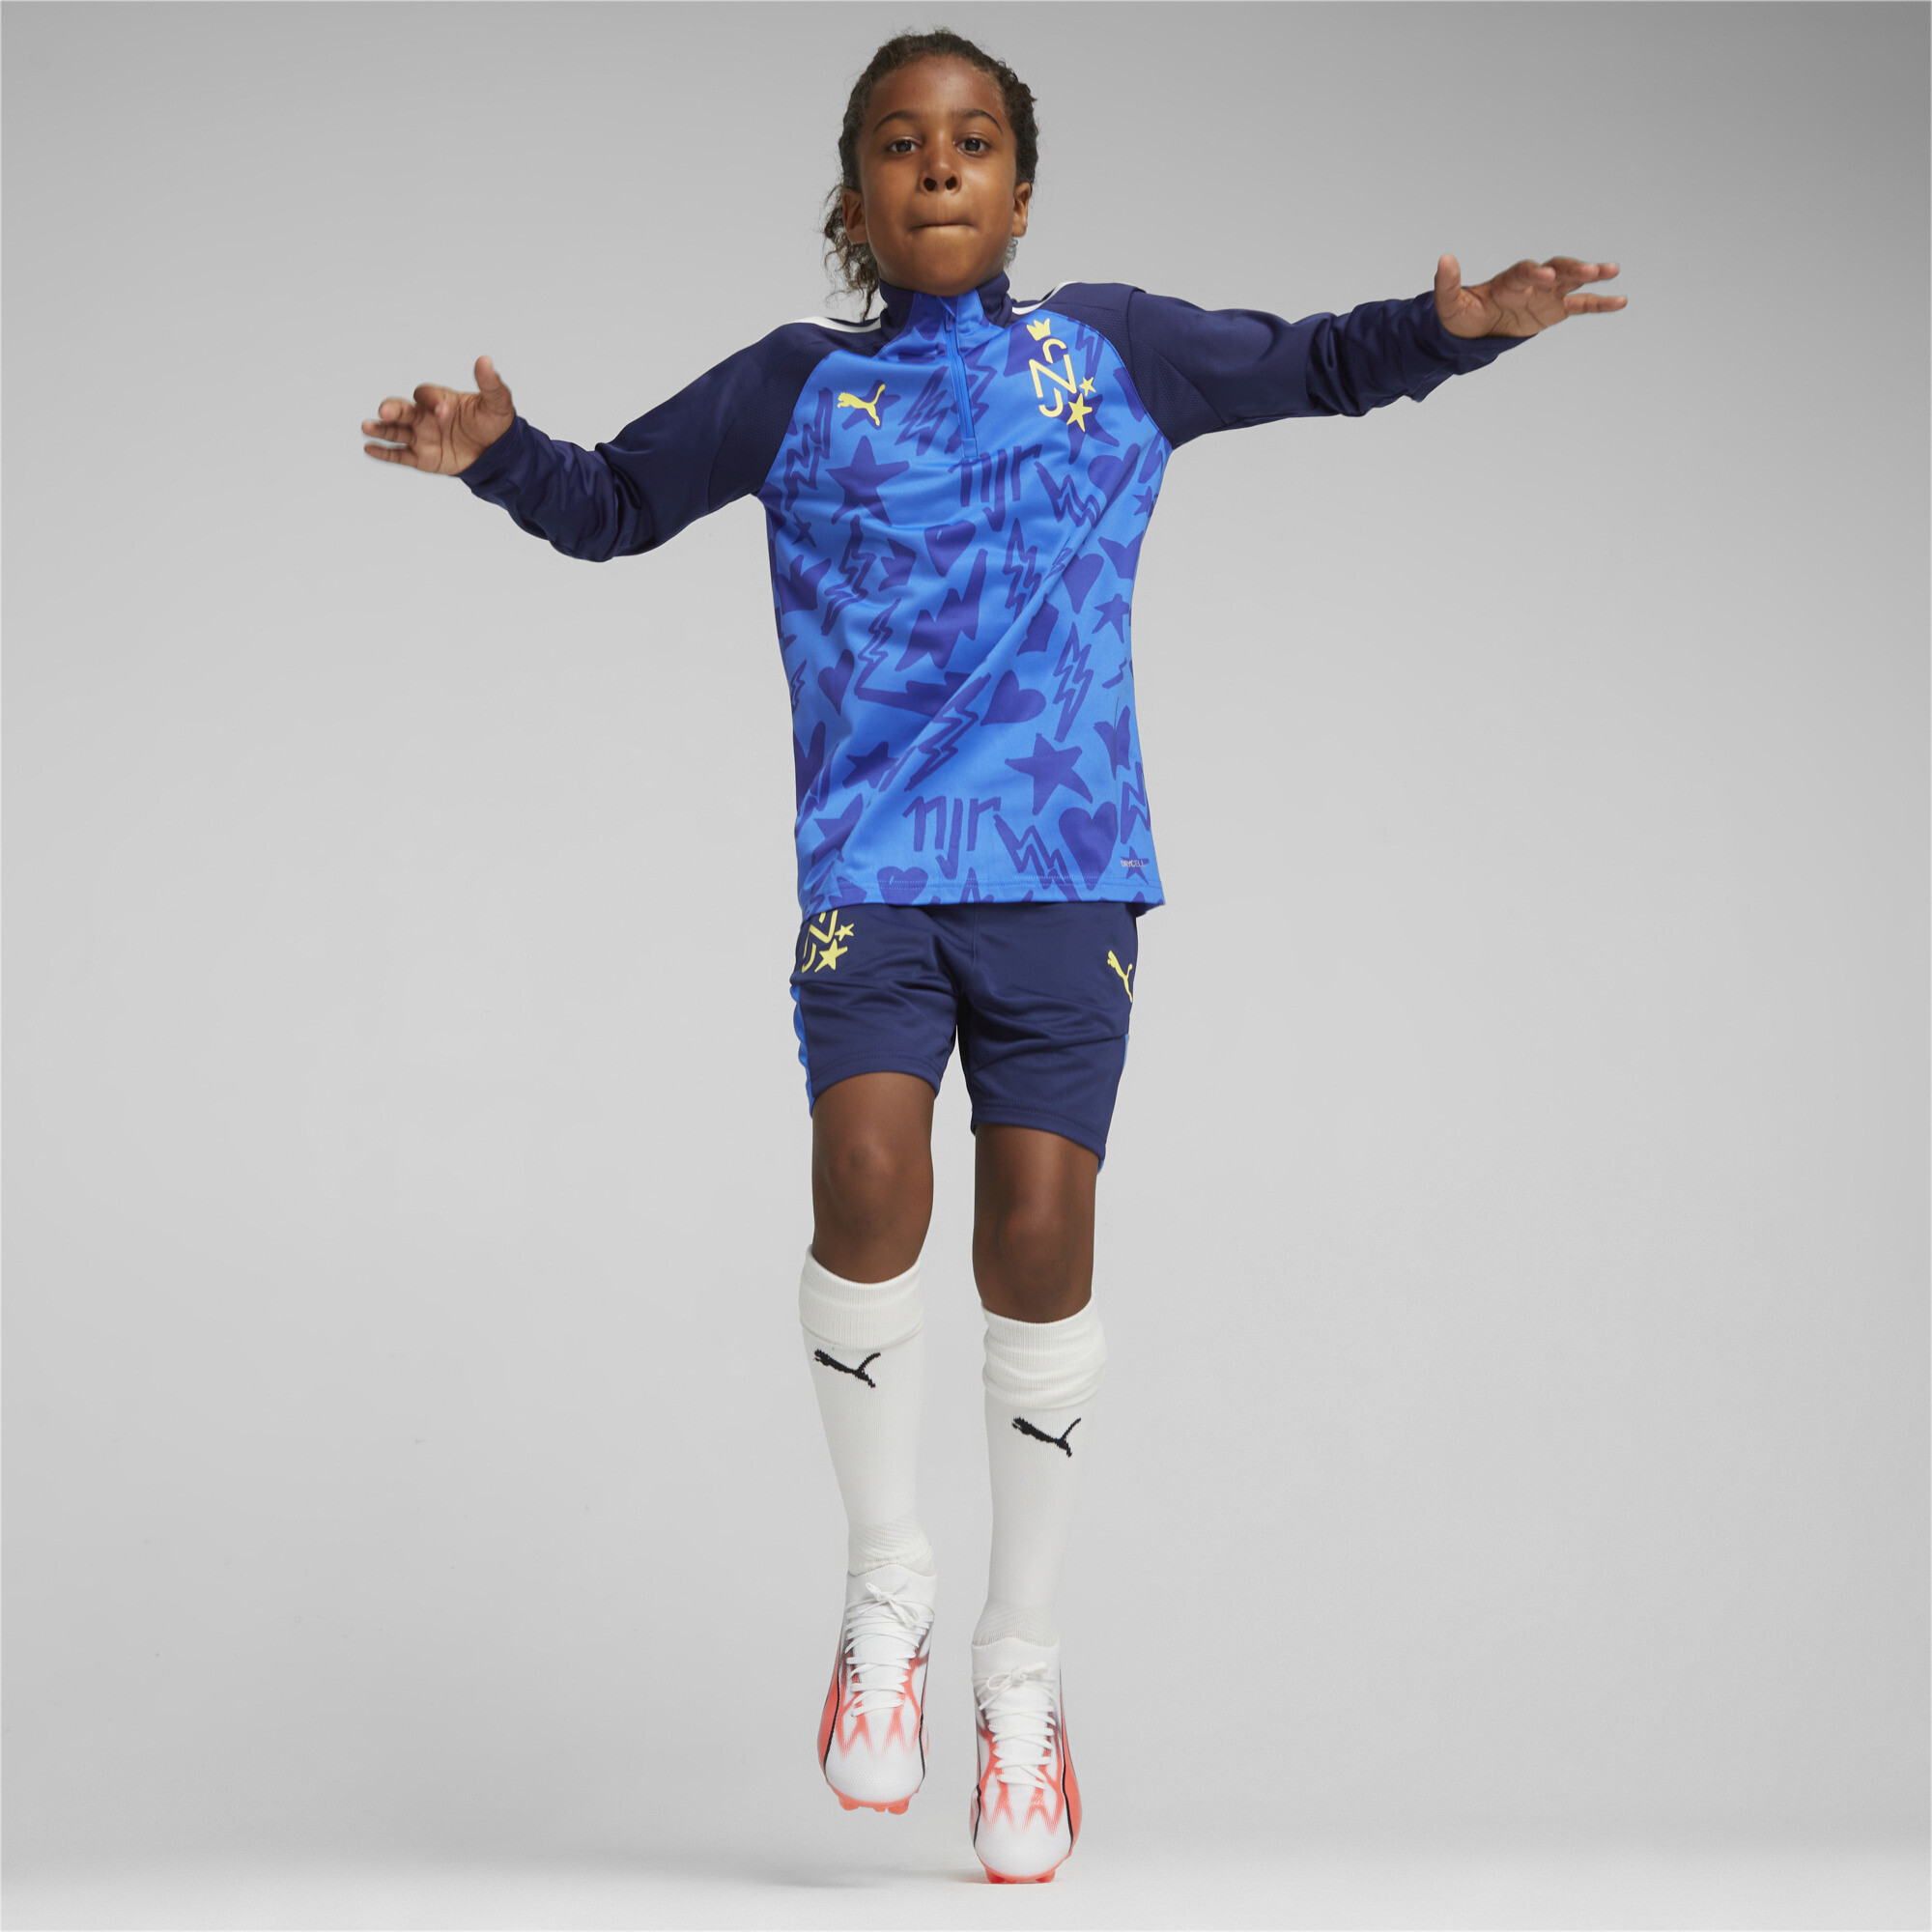 PUMA Neymar Jr Football Track Jacket In Blue, Size 5-6 Youth